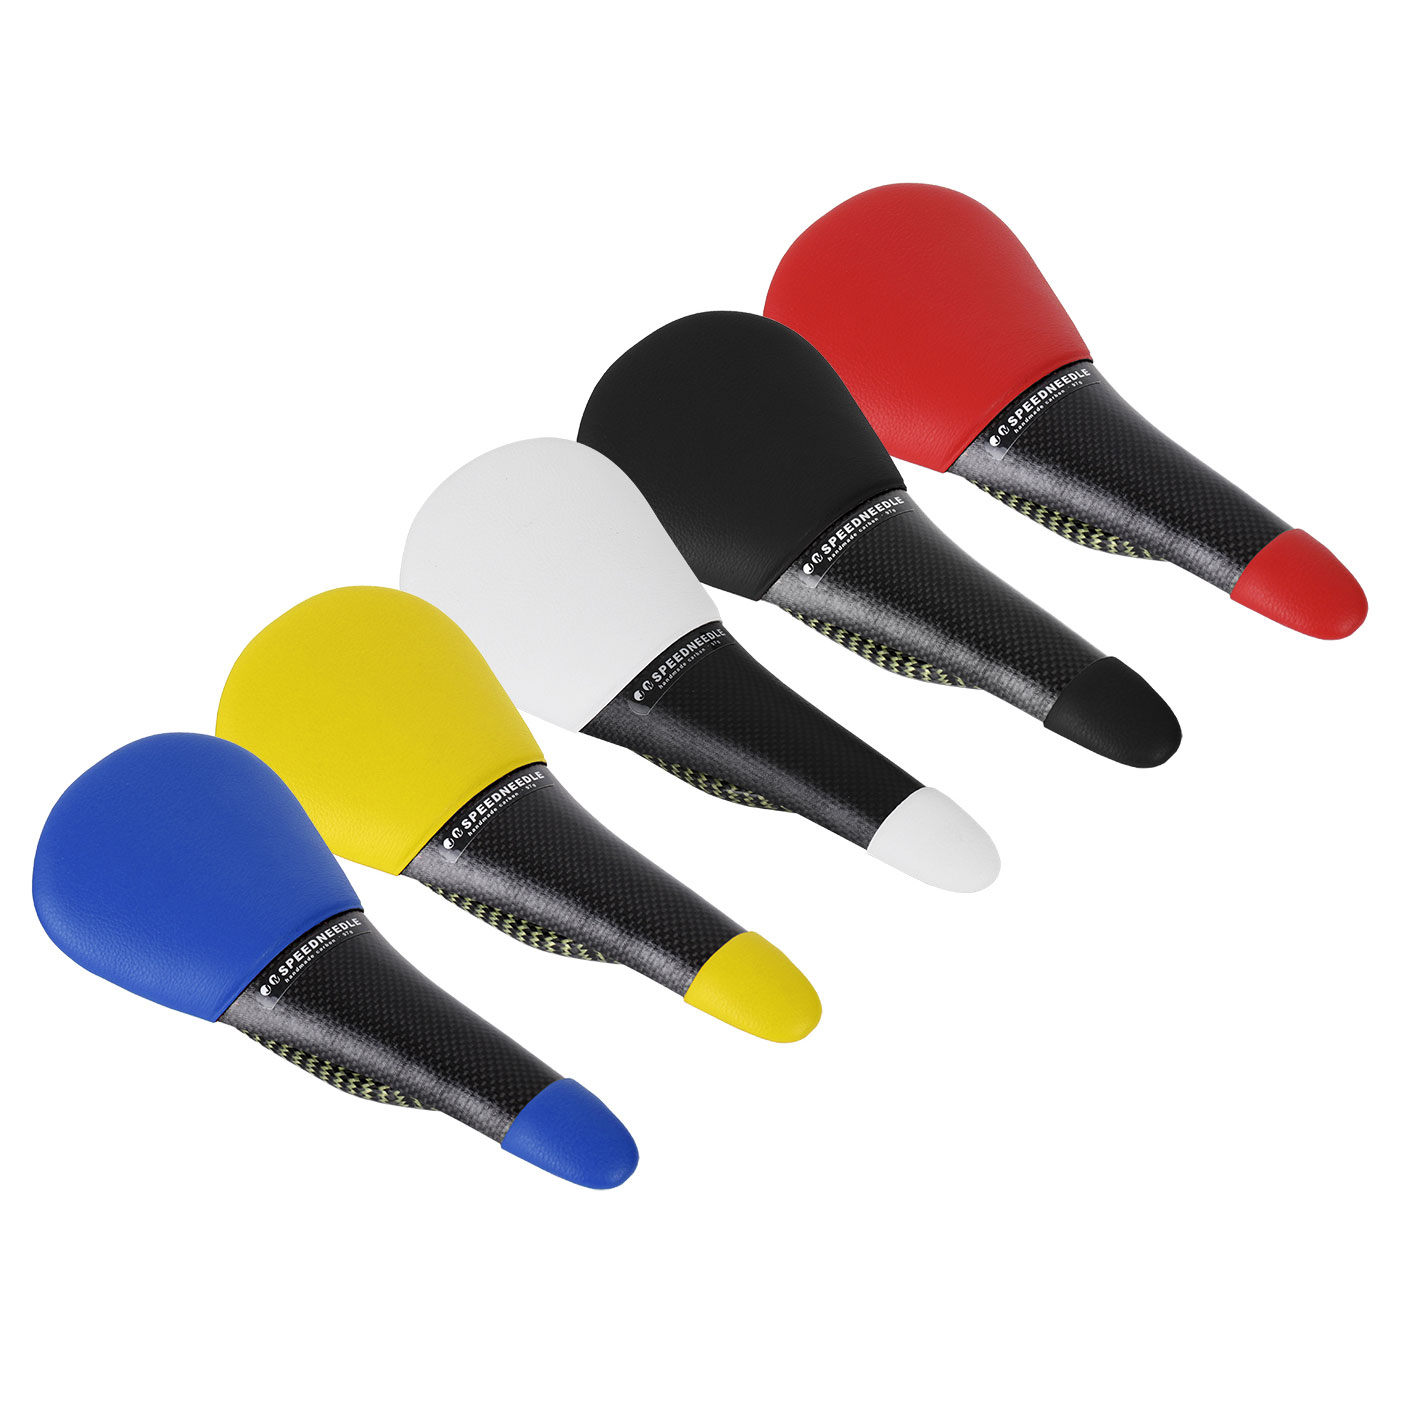 Produktbild von Tune Speedneedle Leder Carbon Sattel - verschiedene Farben